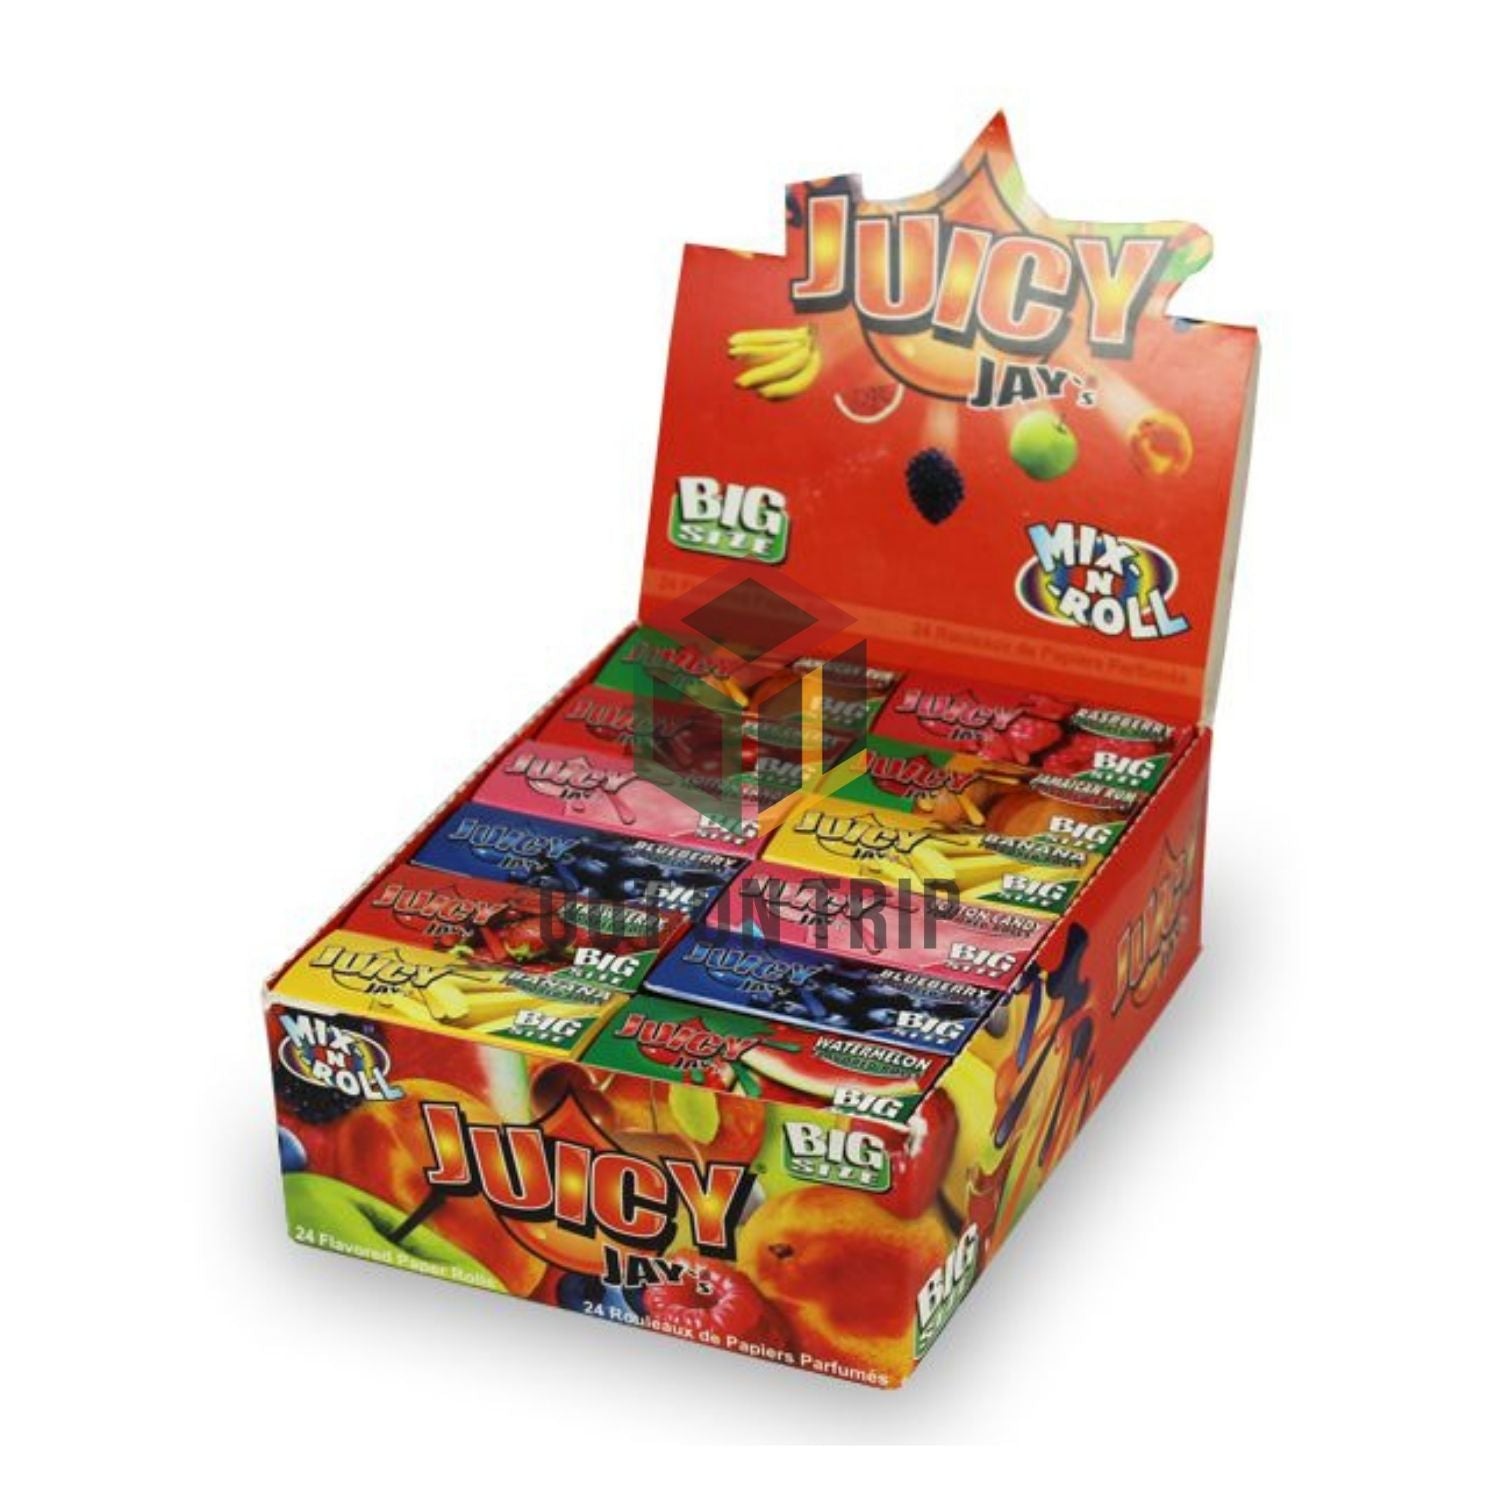 JUICY JAY KING SIZE MIX FLAVORS ROLL BOX (24 packs per box)